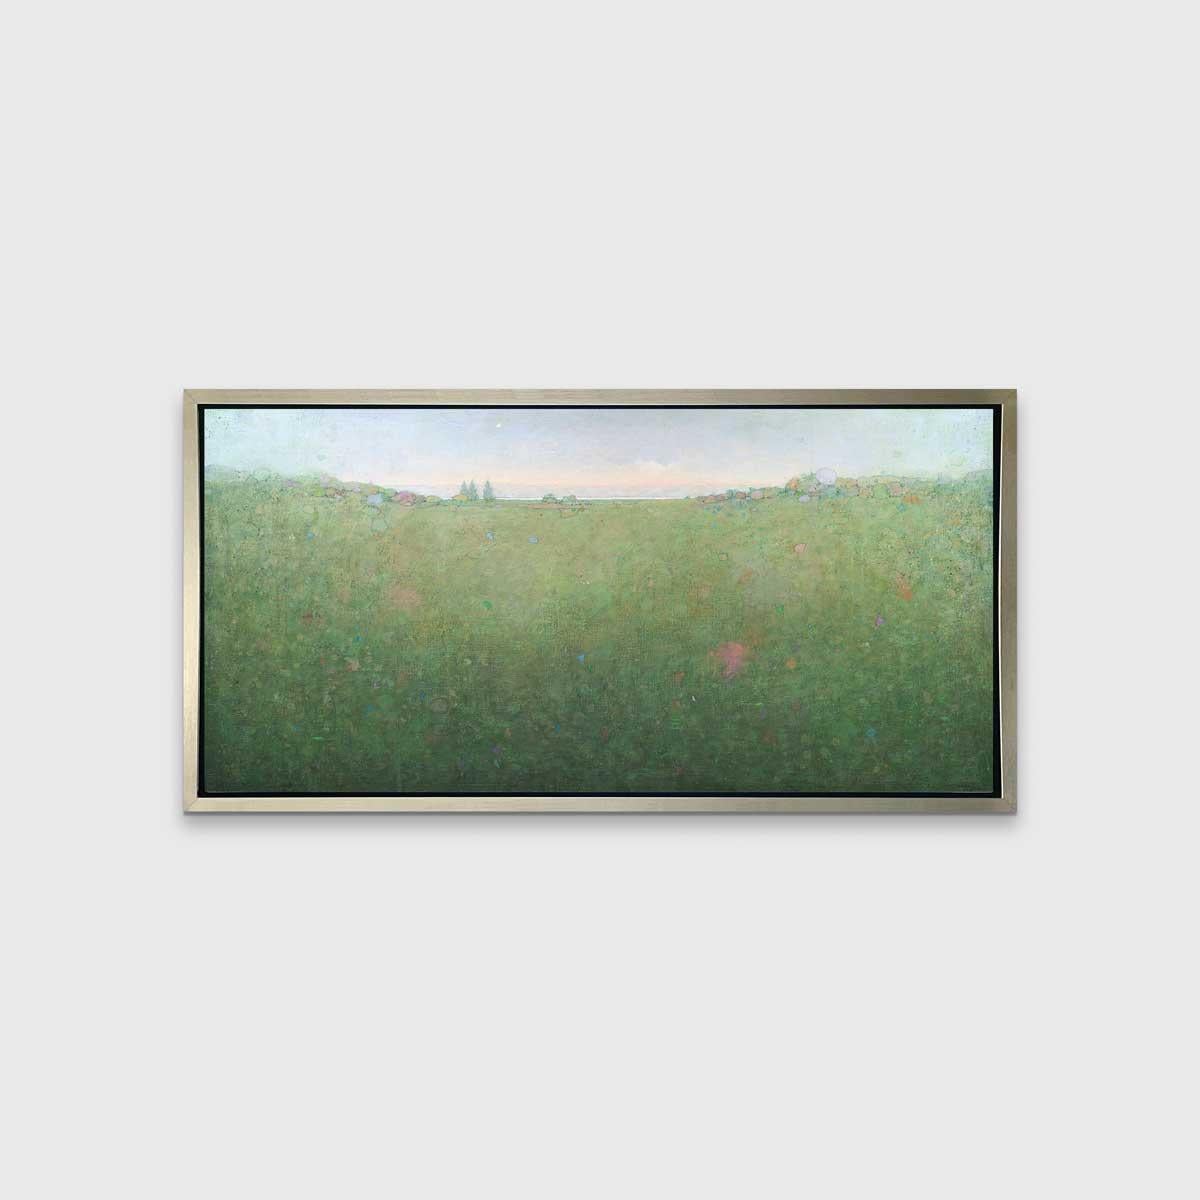 Ce paysage abstrait imprimé en édition limitée par Elwood Howell présente une palette de couleurs froides, vertes et bleu pâle. La ligne d'horizon haute, caractéristique de l'artiste, forme une très légère vallée au centre, bordée de formes telles